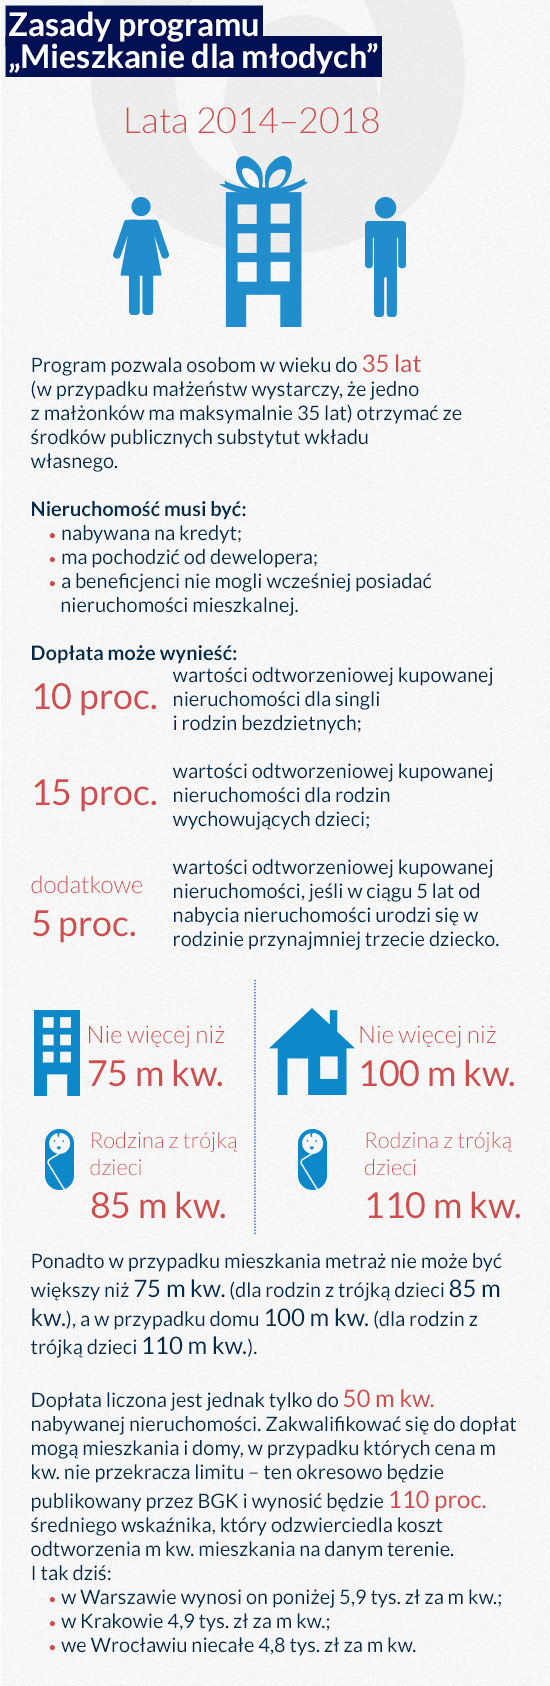 (infografiki Darek GÄszczyk)